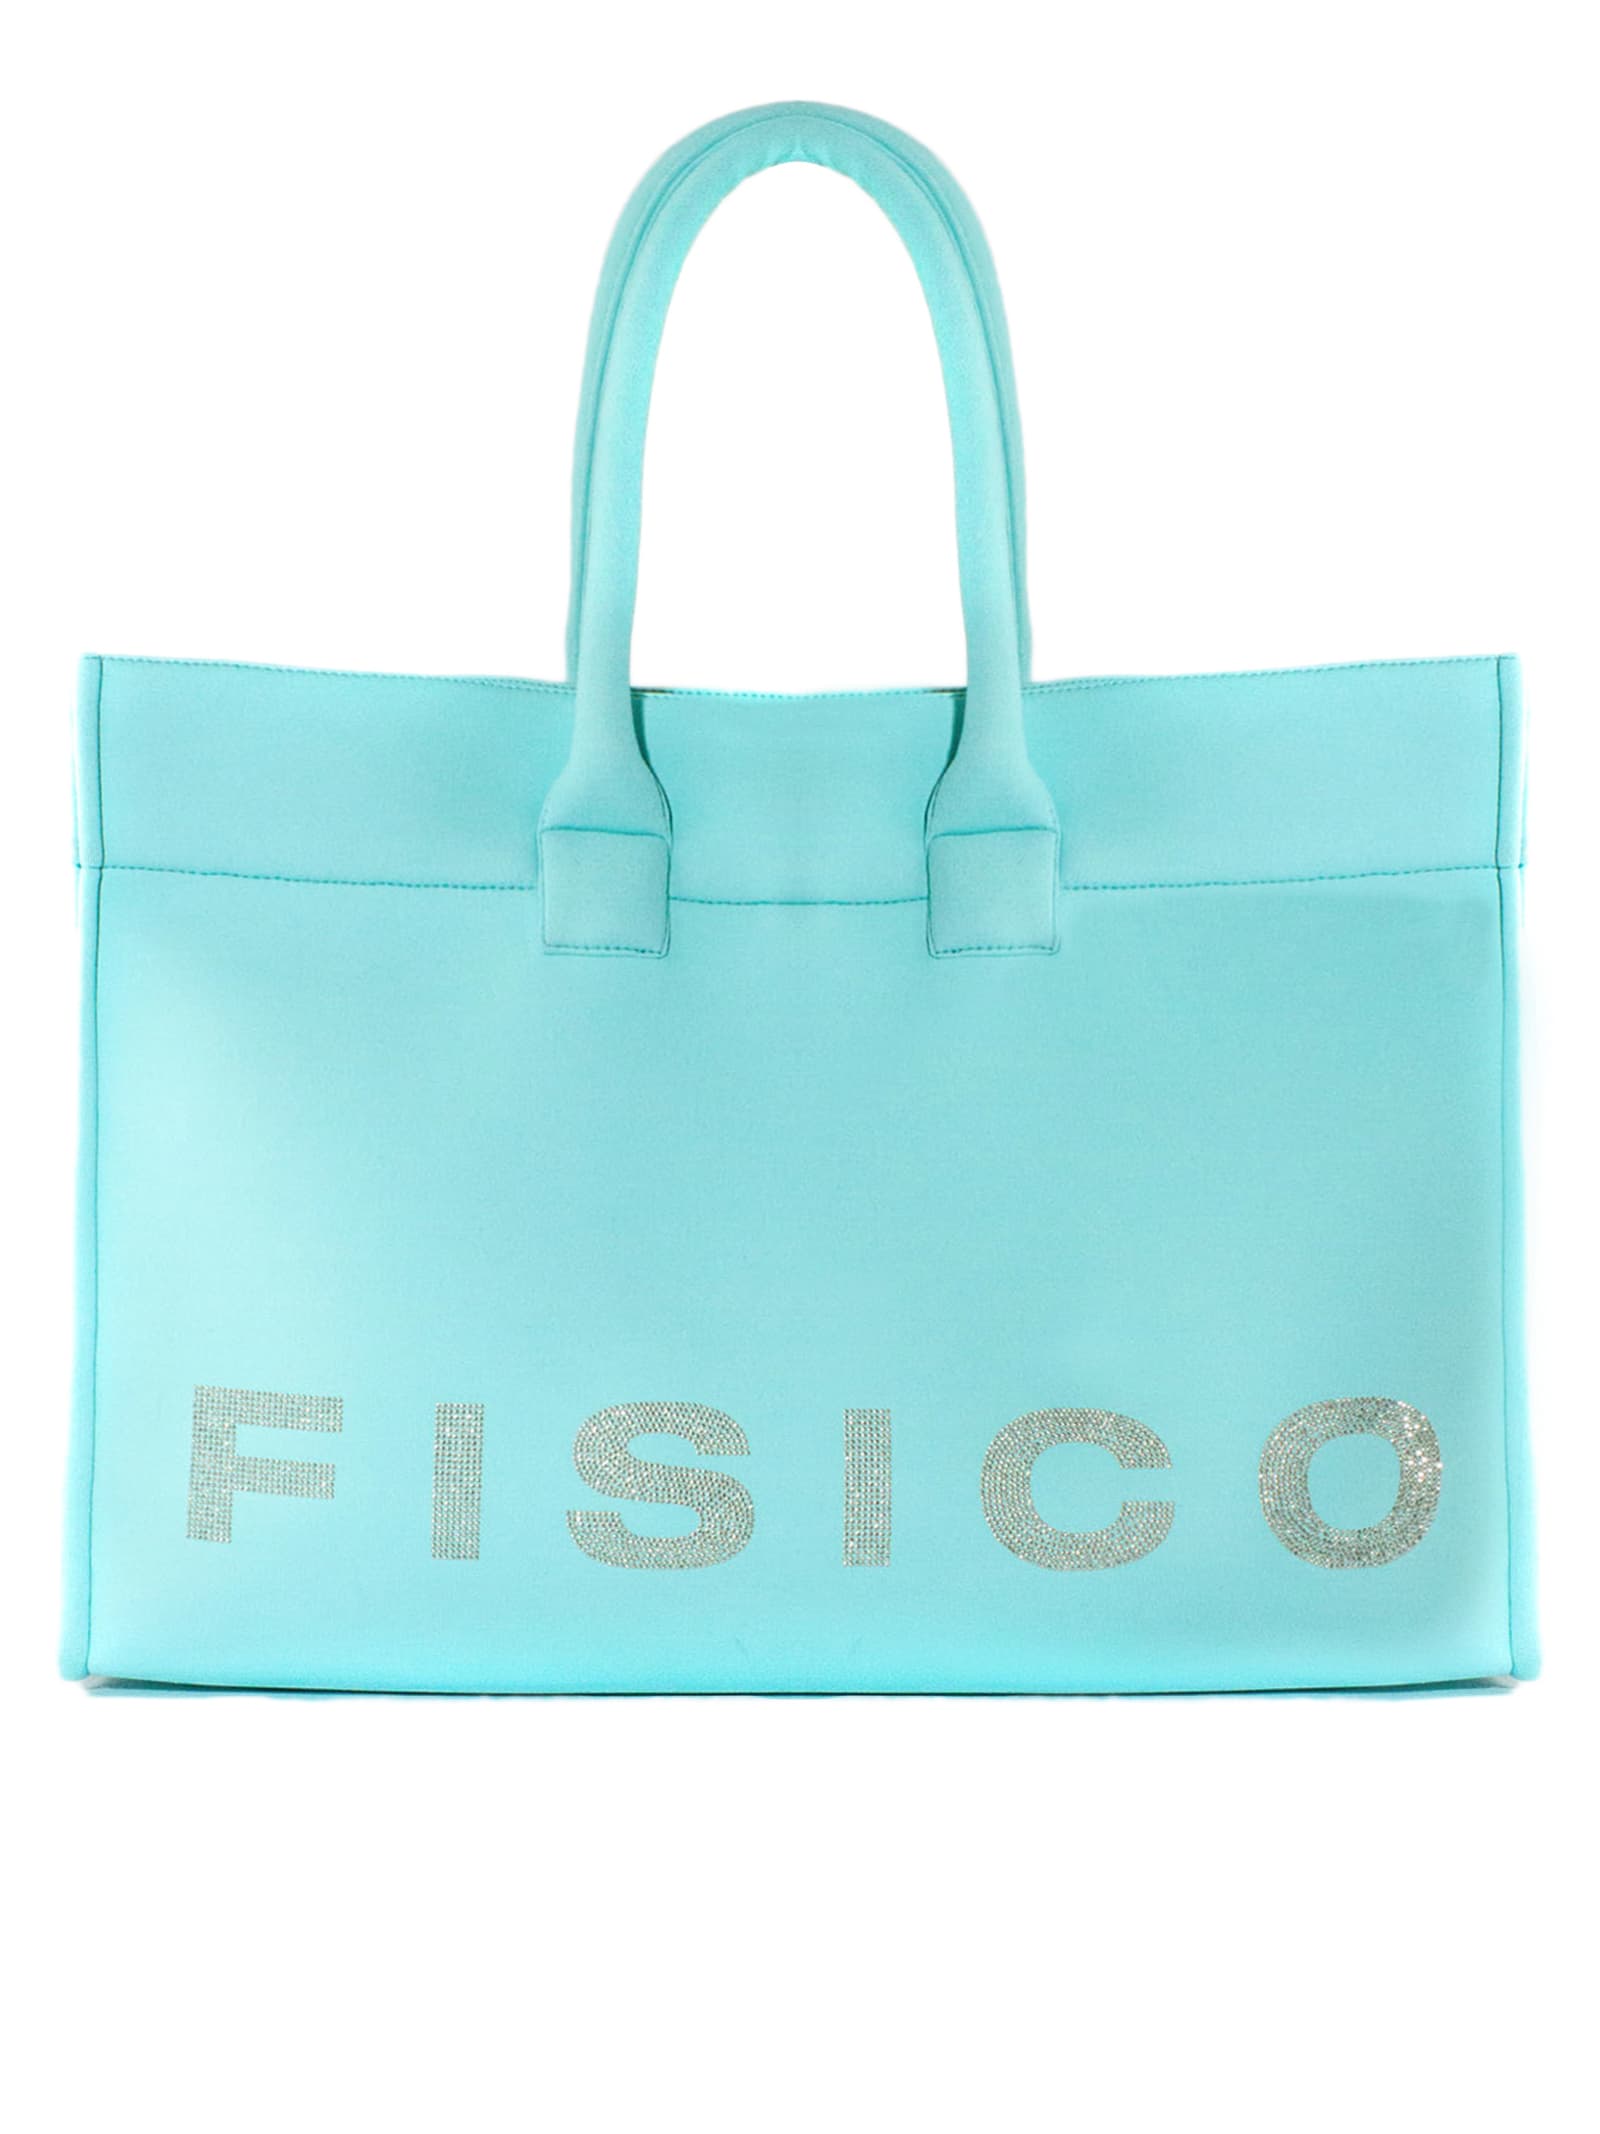 Fisico - Cristina Ferrari Light Blue Microfibre Tote Bag